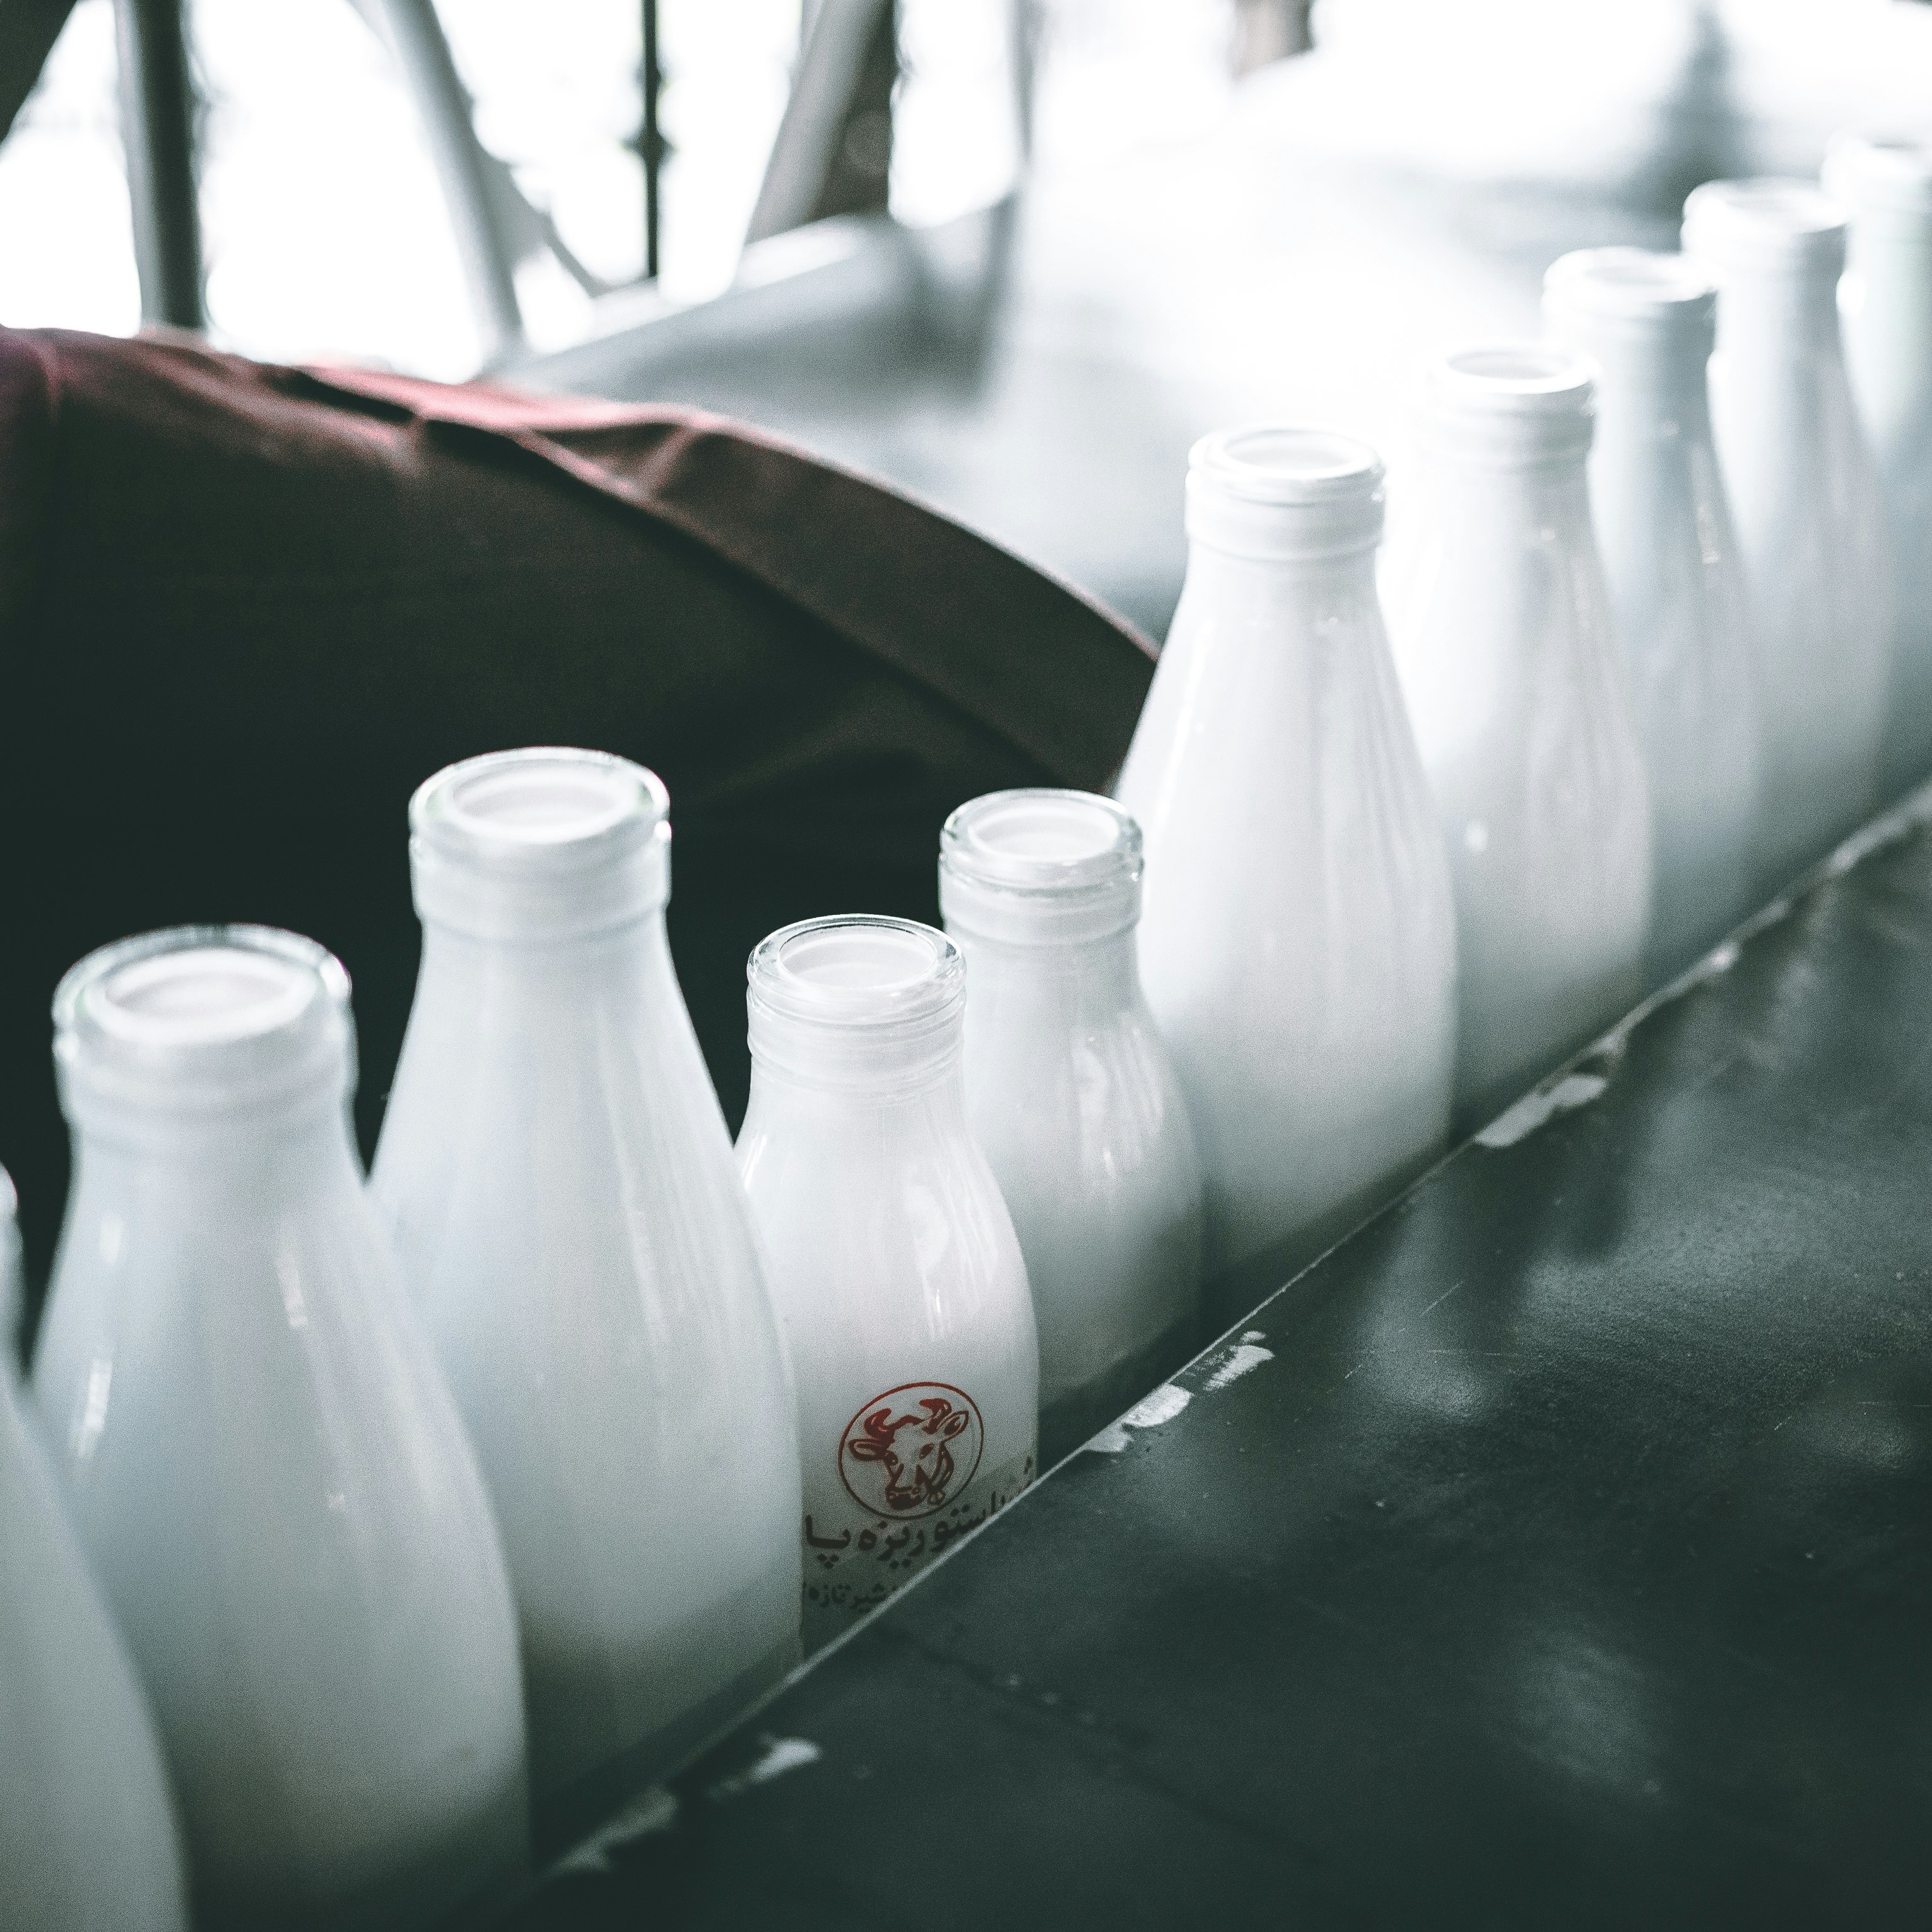 Définition de lait stérilisé | Dictionnaire français